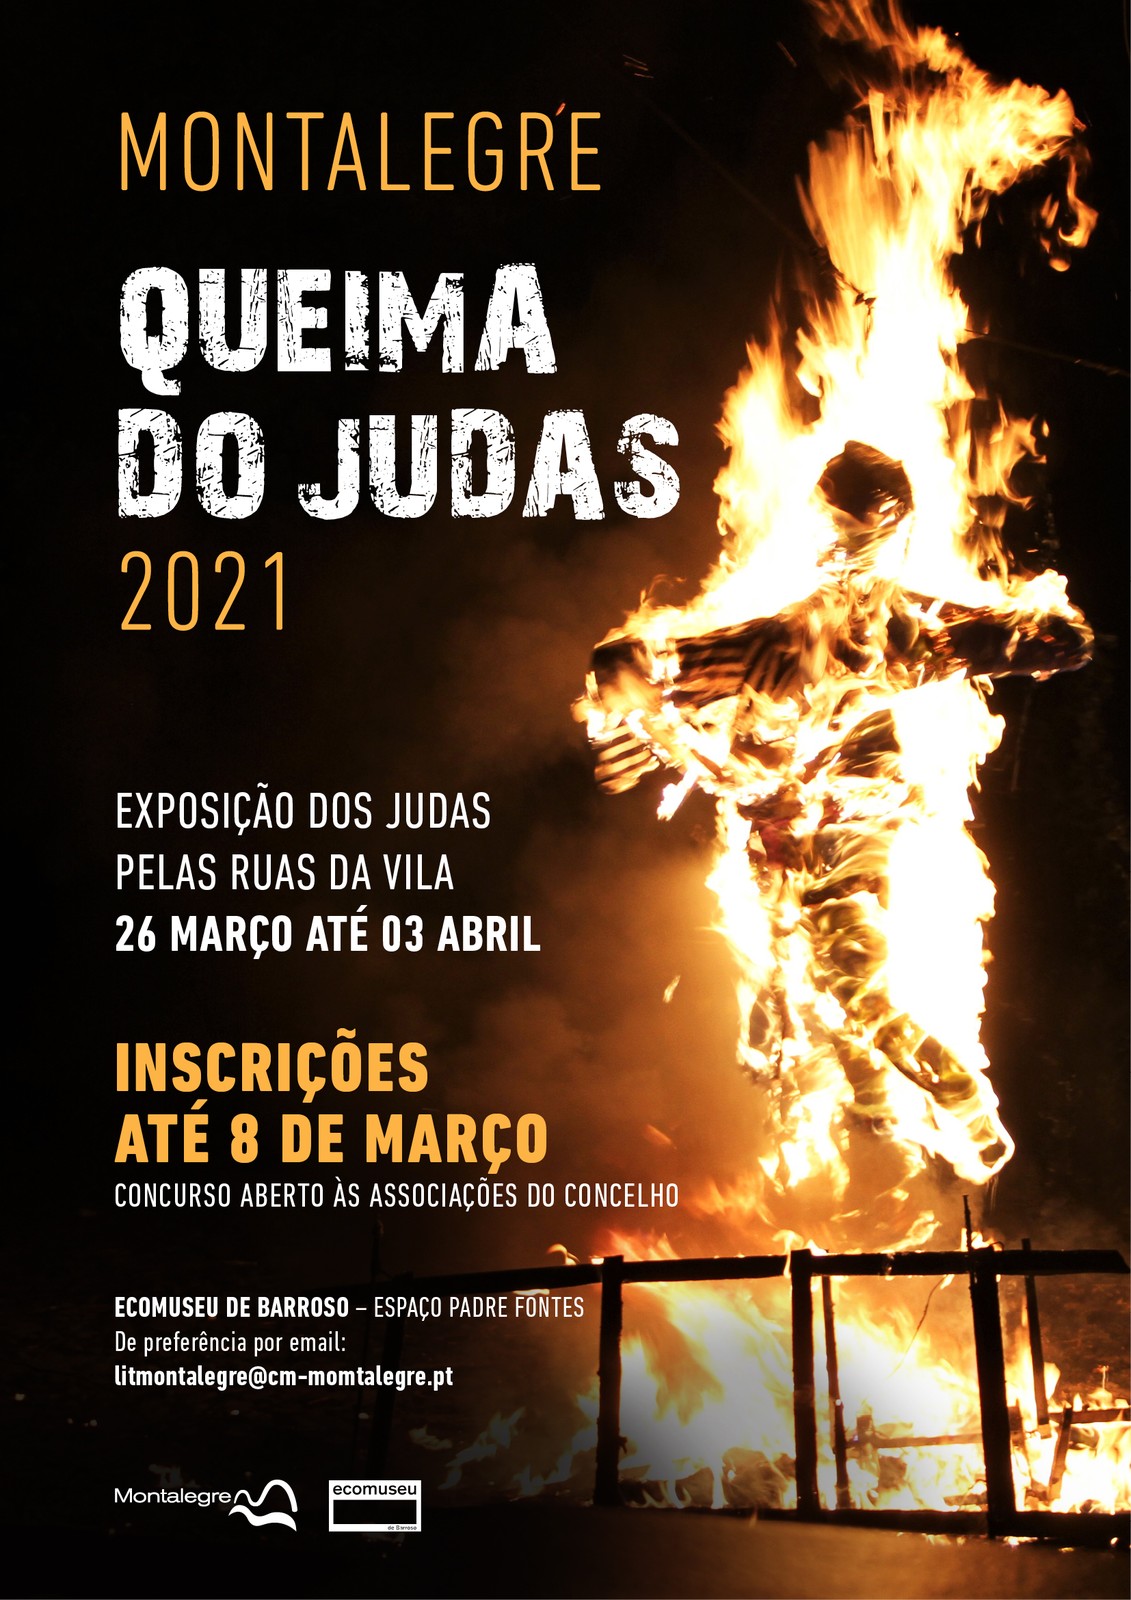 Montalegre   queima do judas 2021  cartaz  oficial